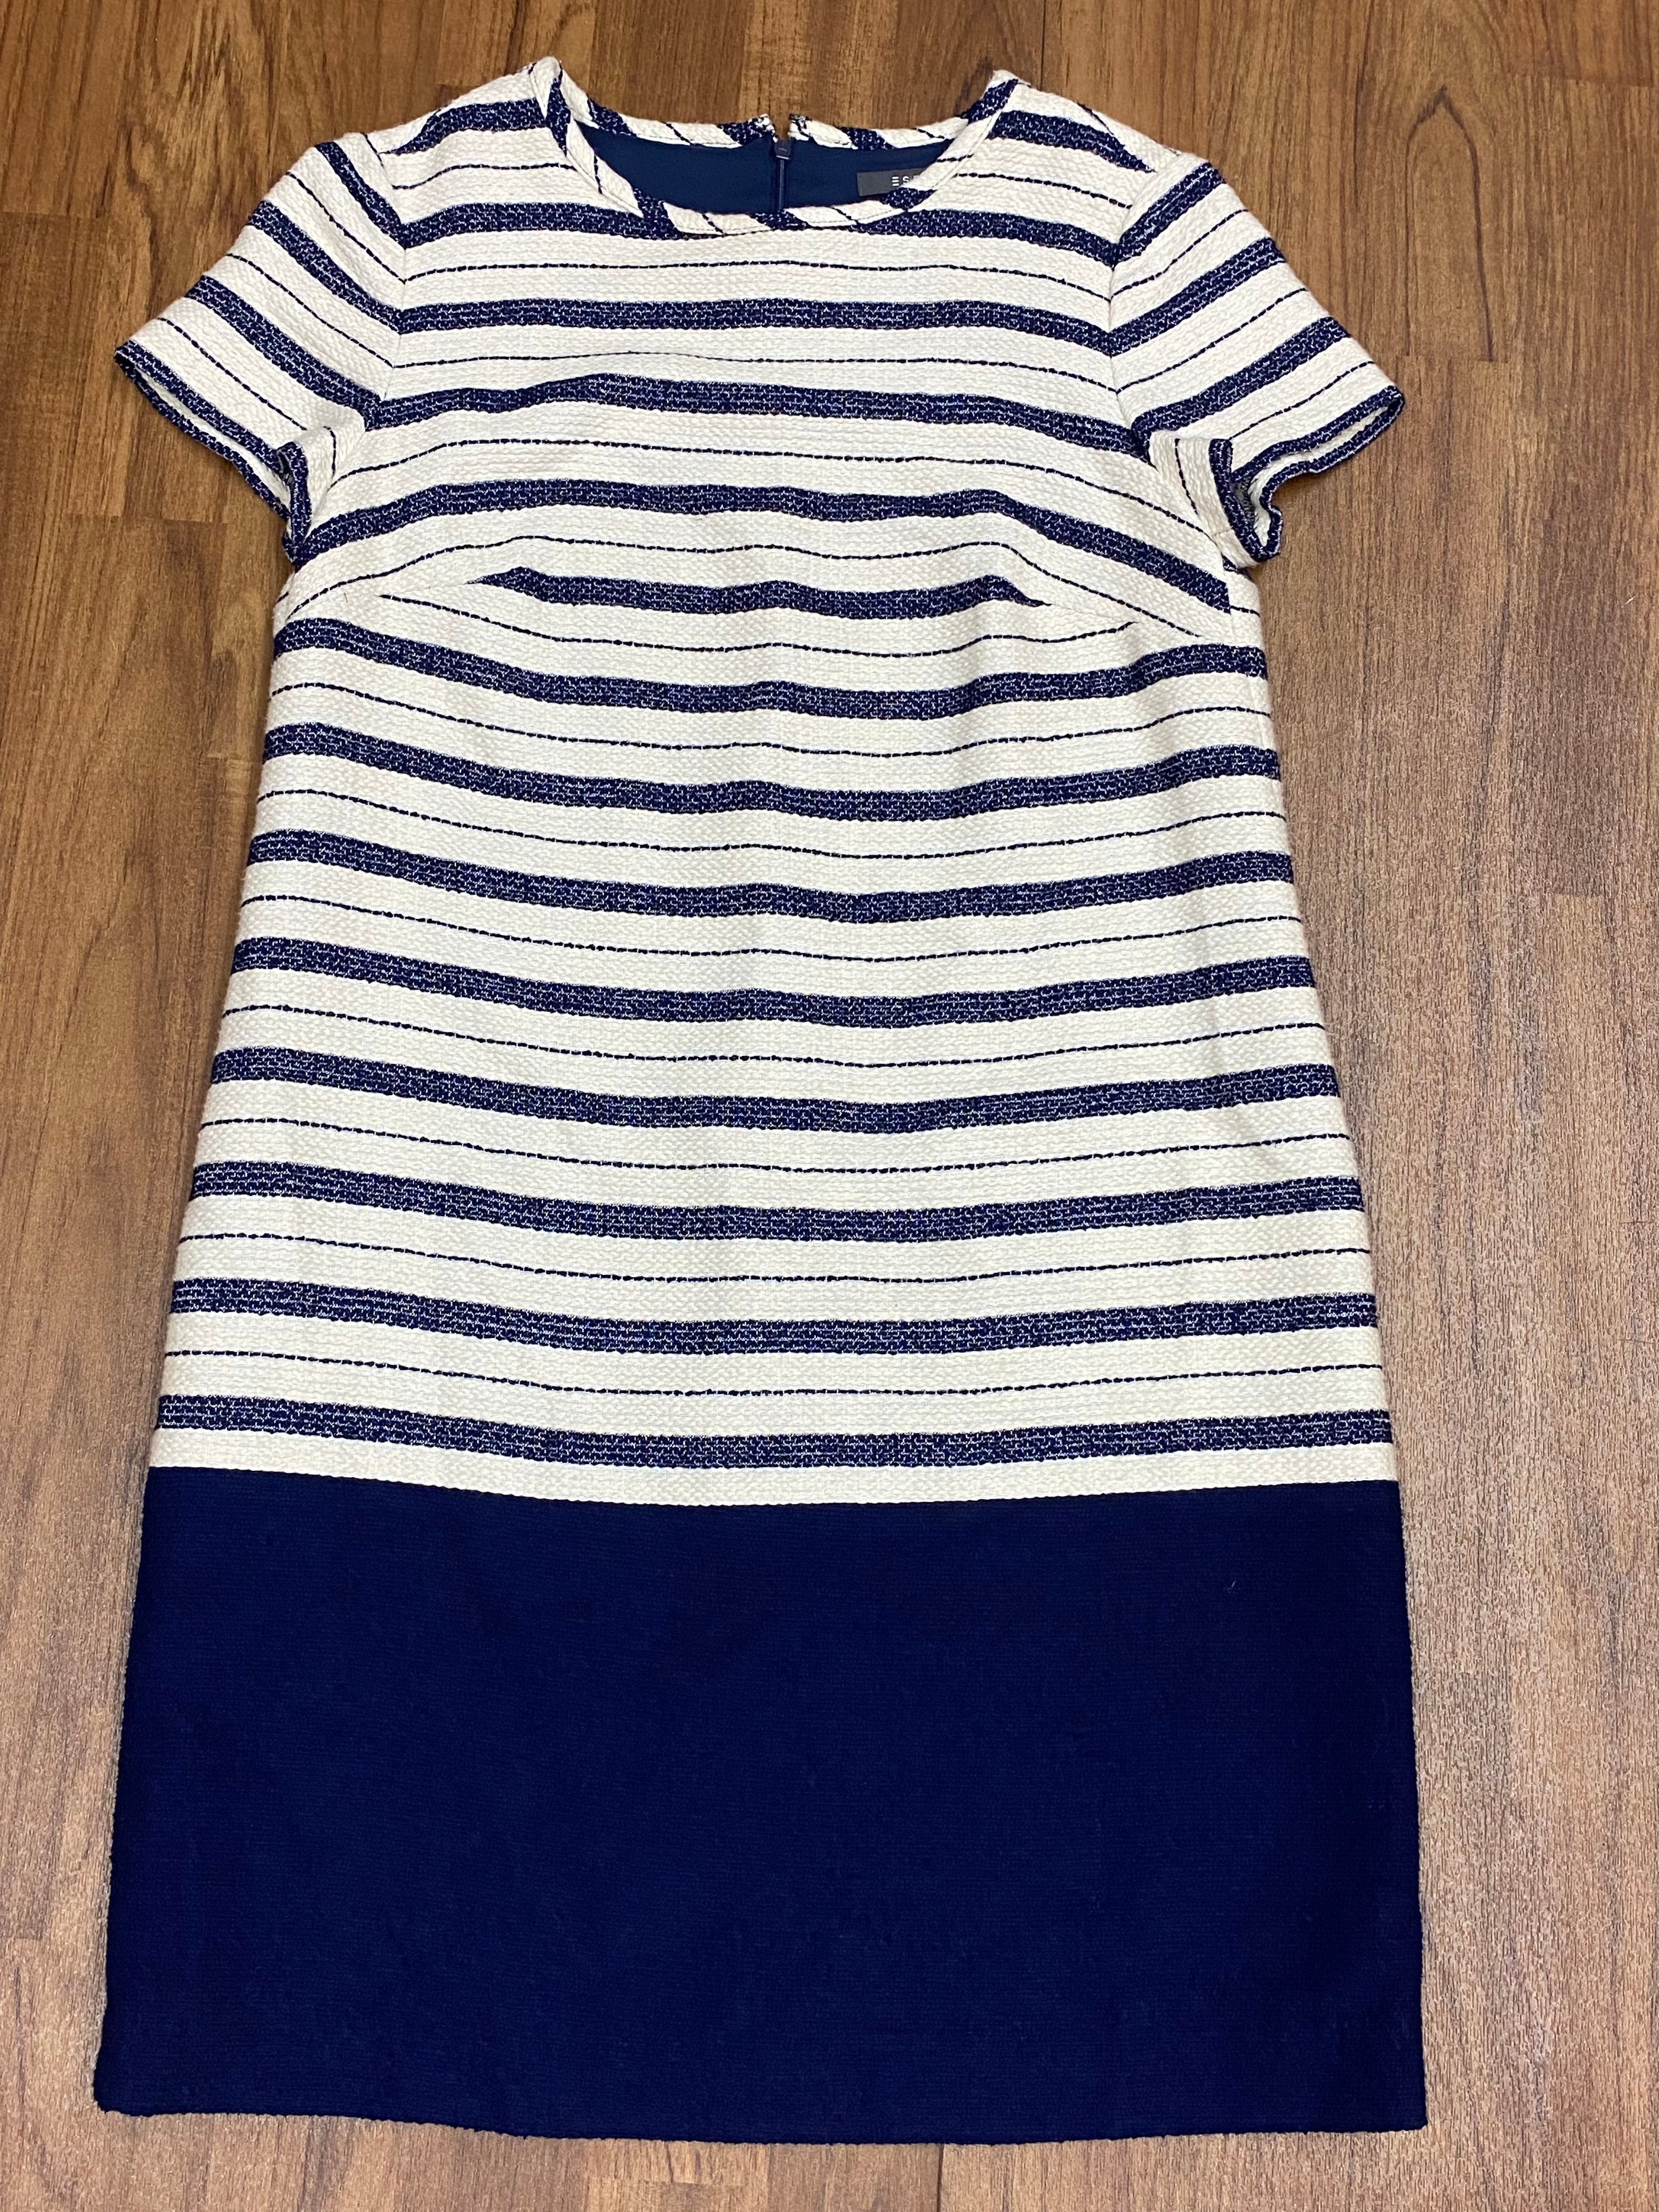 Damen Kleid blau/weiß gestreift, tiefe Tailiie 20er Jahre Stil Gr.36